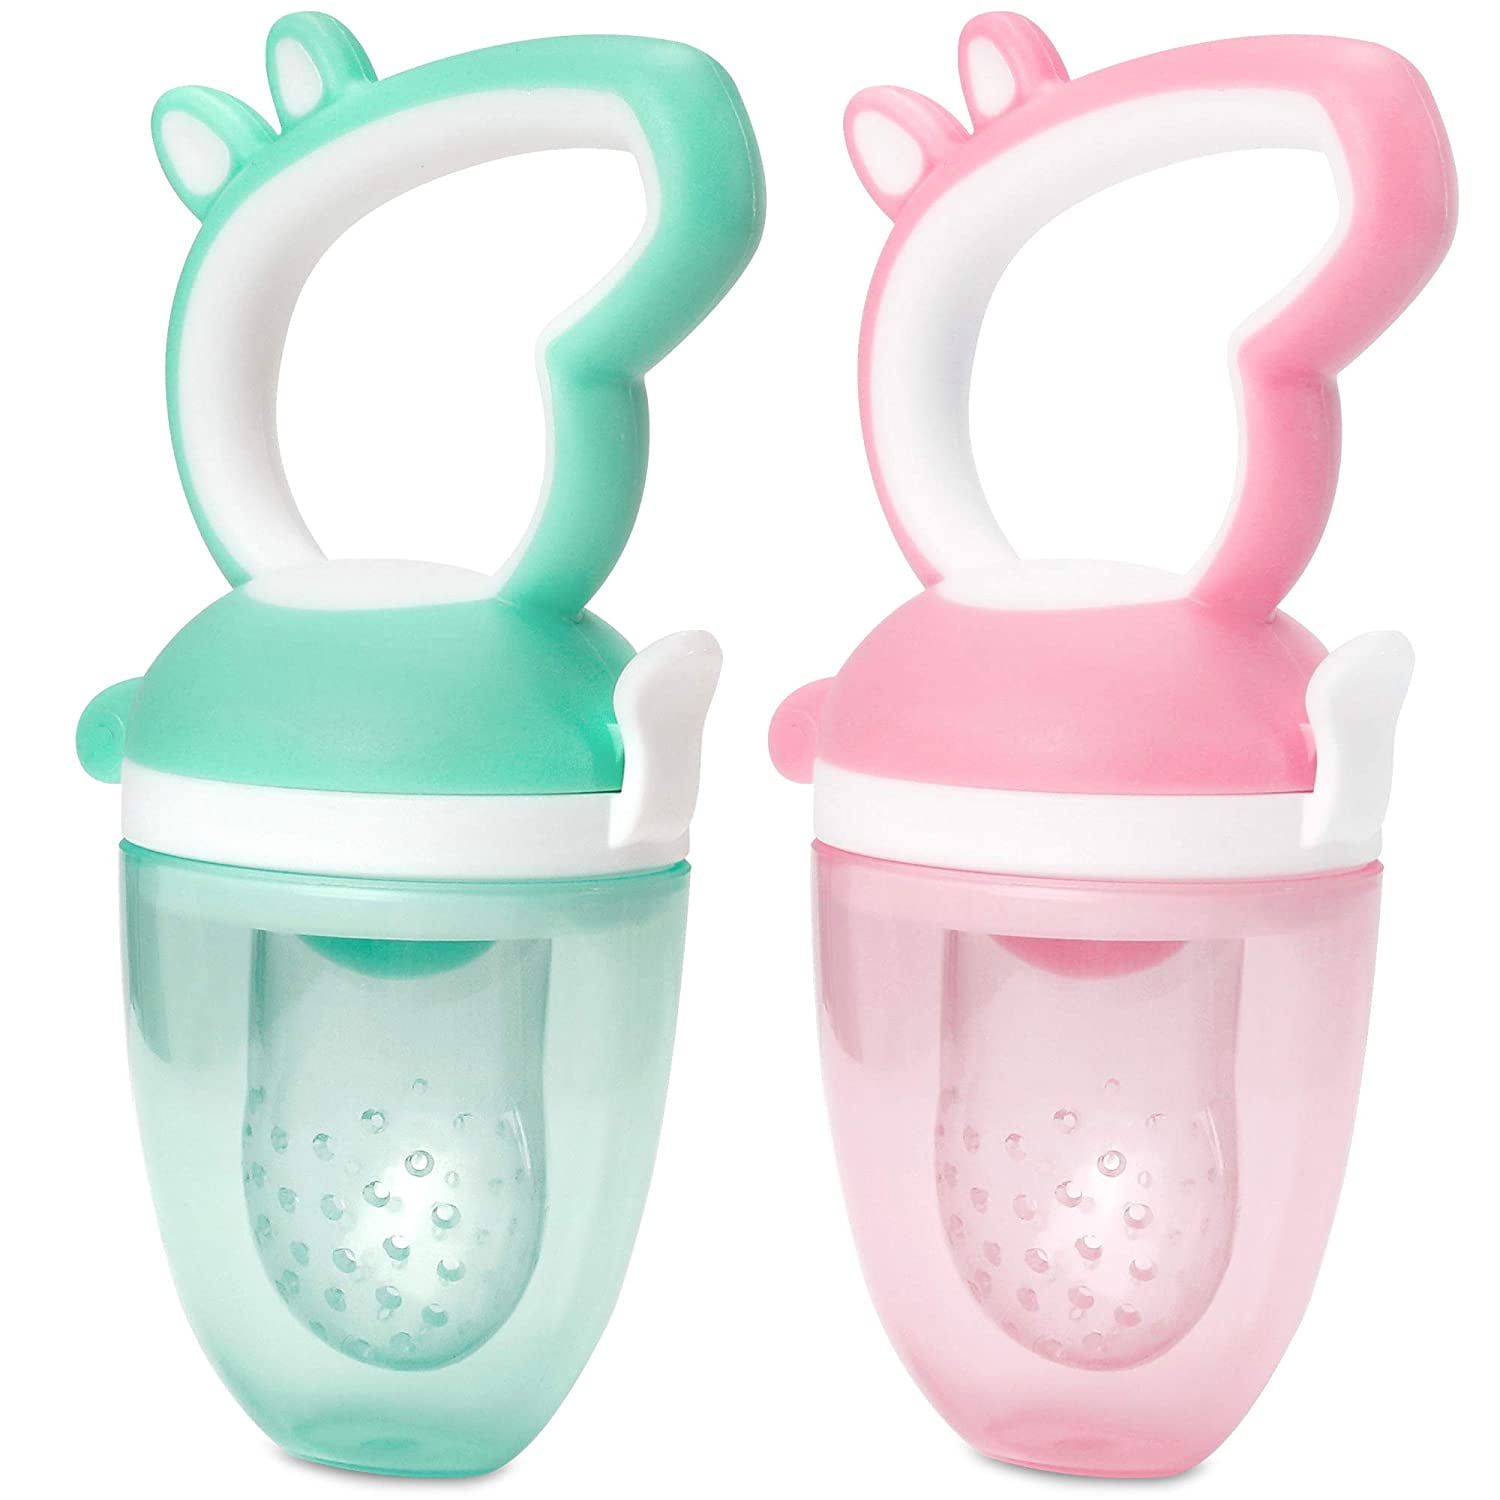 Peppa Pig Water Filled Baby Teethers Chewable Teething Toy BPA Free Teething